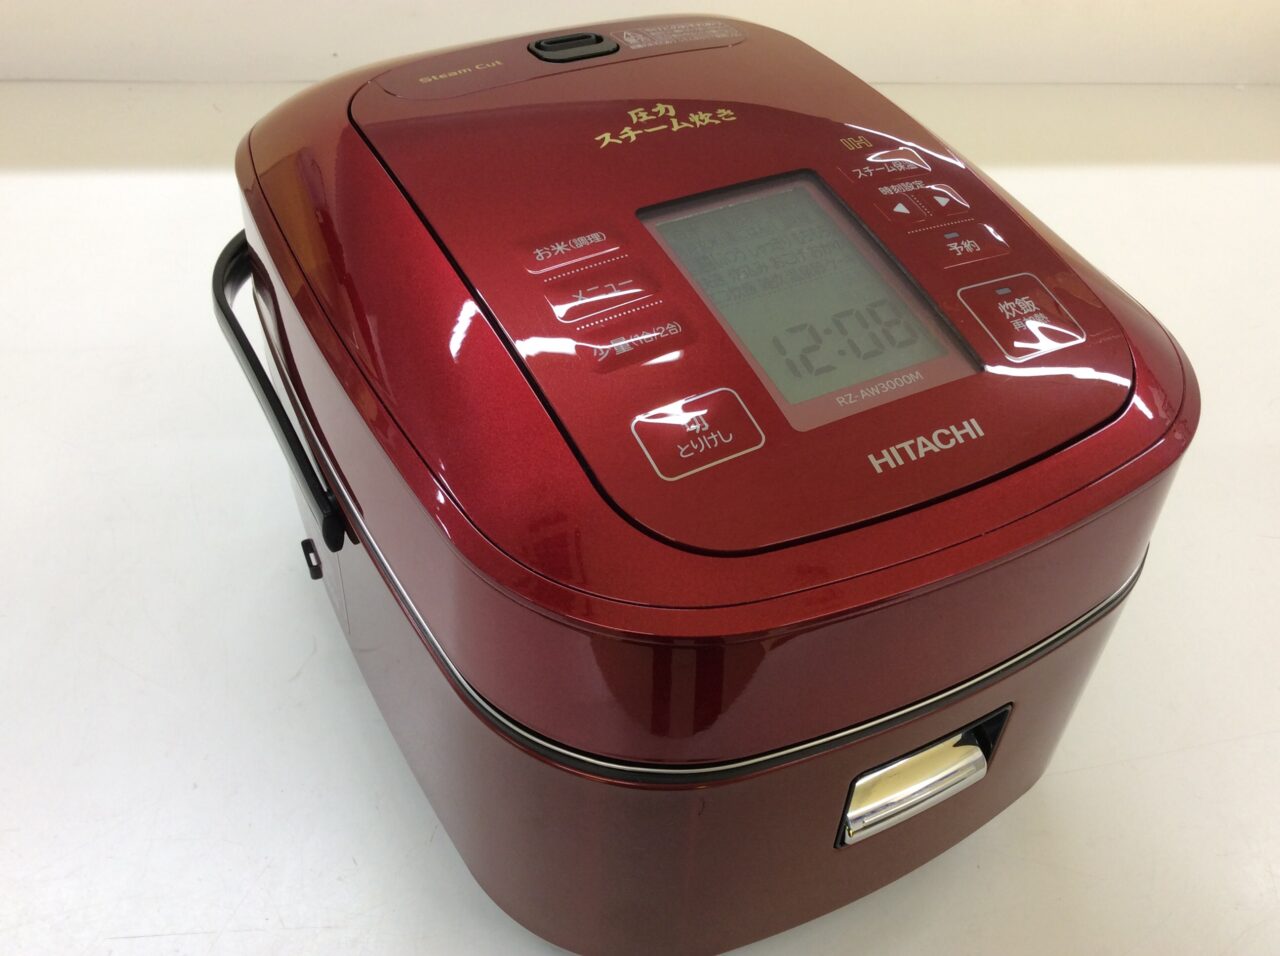 日立　HITACHI RZ-AW3000M(W) 炊飯器　【新品　未開封】